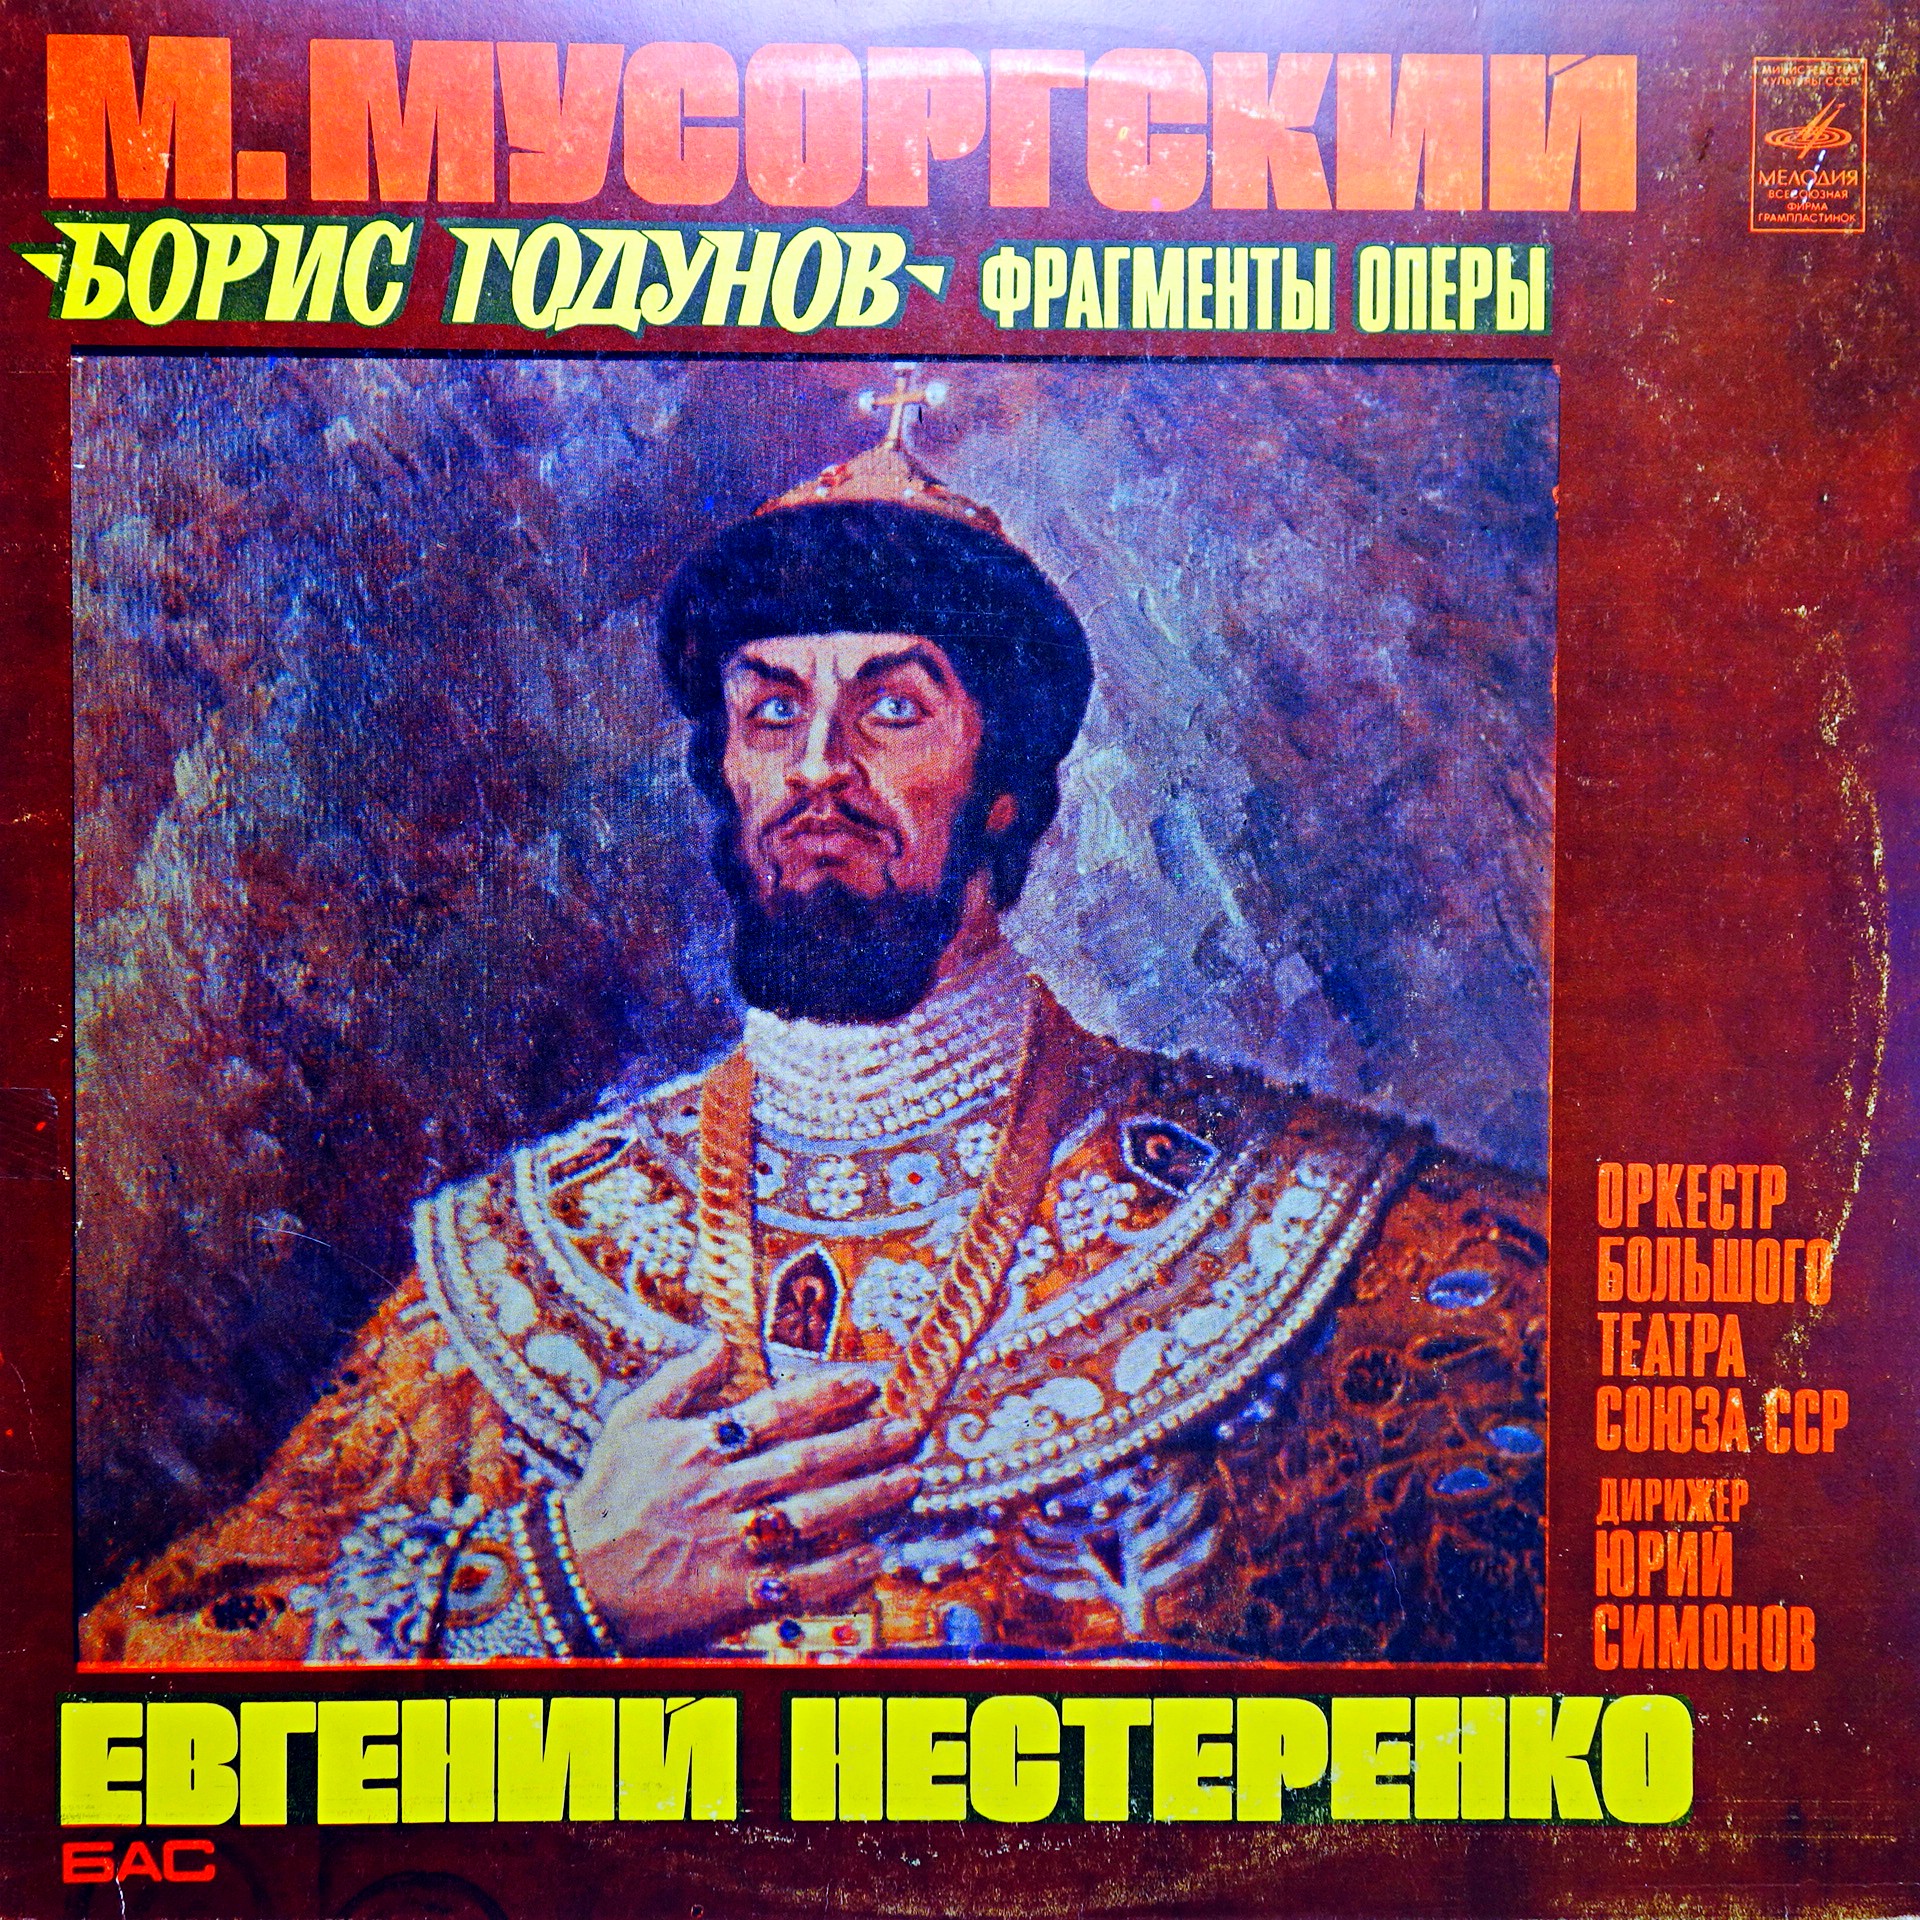 LP M. Mussorgsky - Evgeny Nesterenko ‎– Boris Godunov, Excerpts From The Opera